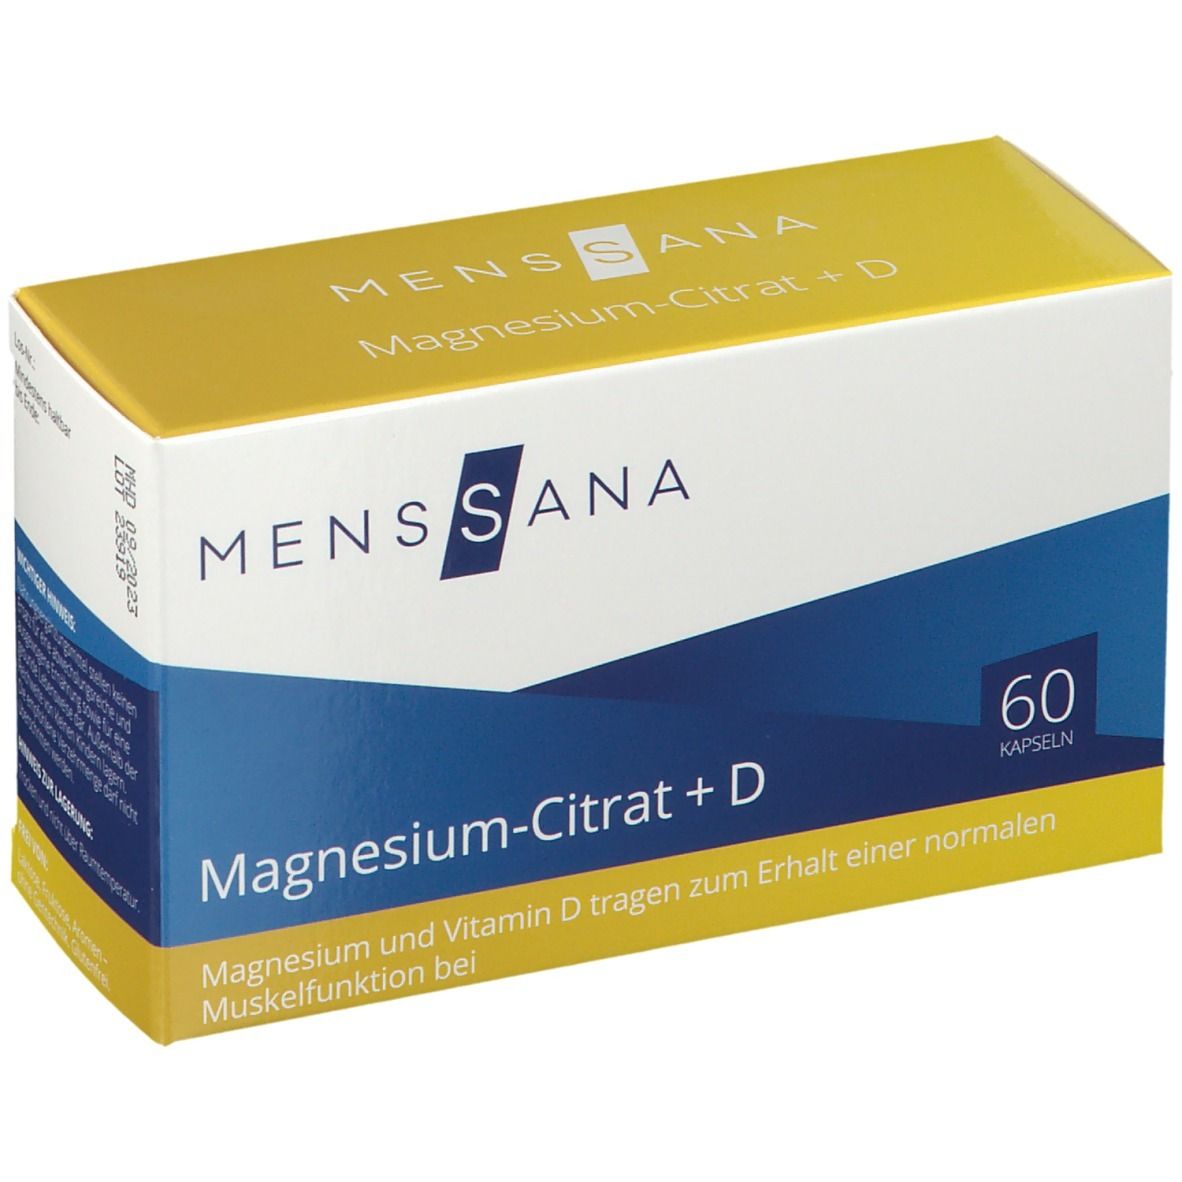 Image of MensSana Magnesium-Citrat +D